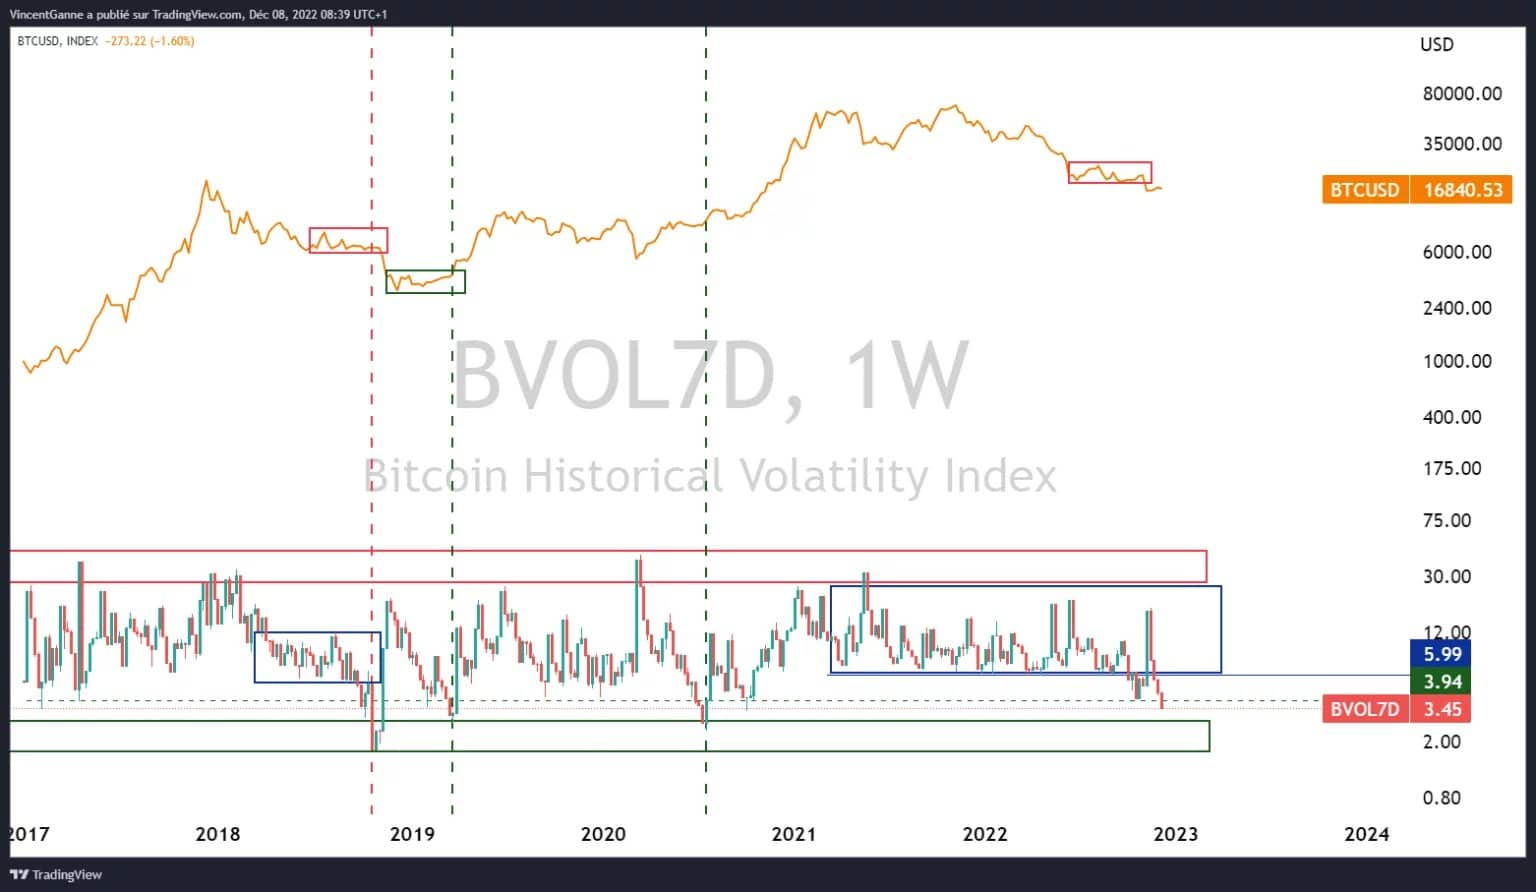 Figura 2: Volatilidad histórica de 7 días en datos semanales del precio del Bitcoin